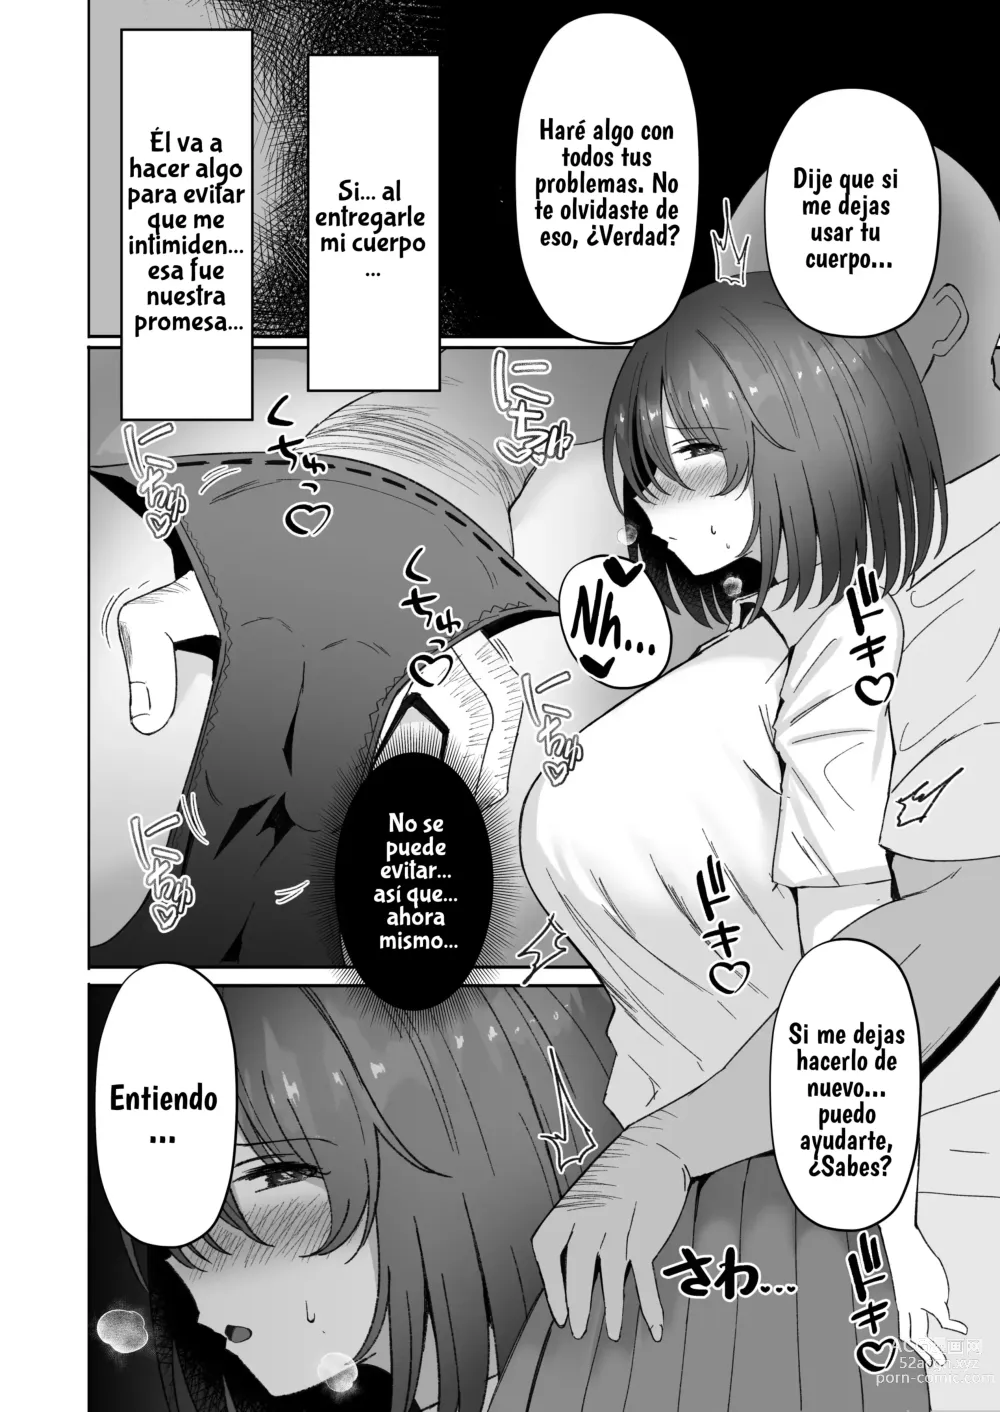 Page 9 of doujinshi El sufrimiento de la chica de pelo negro.